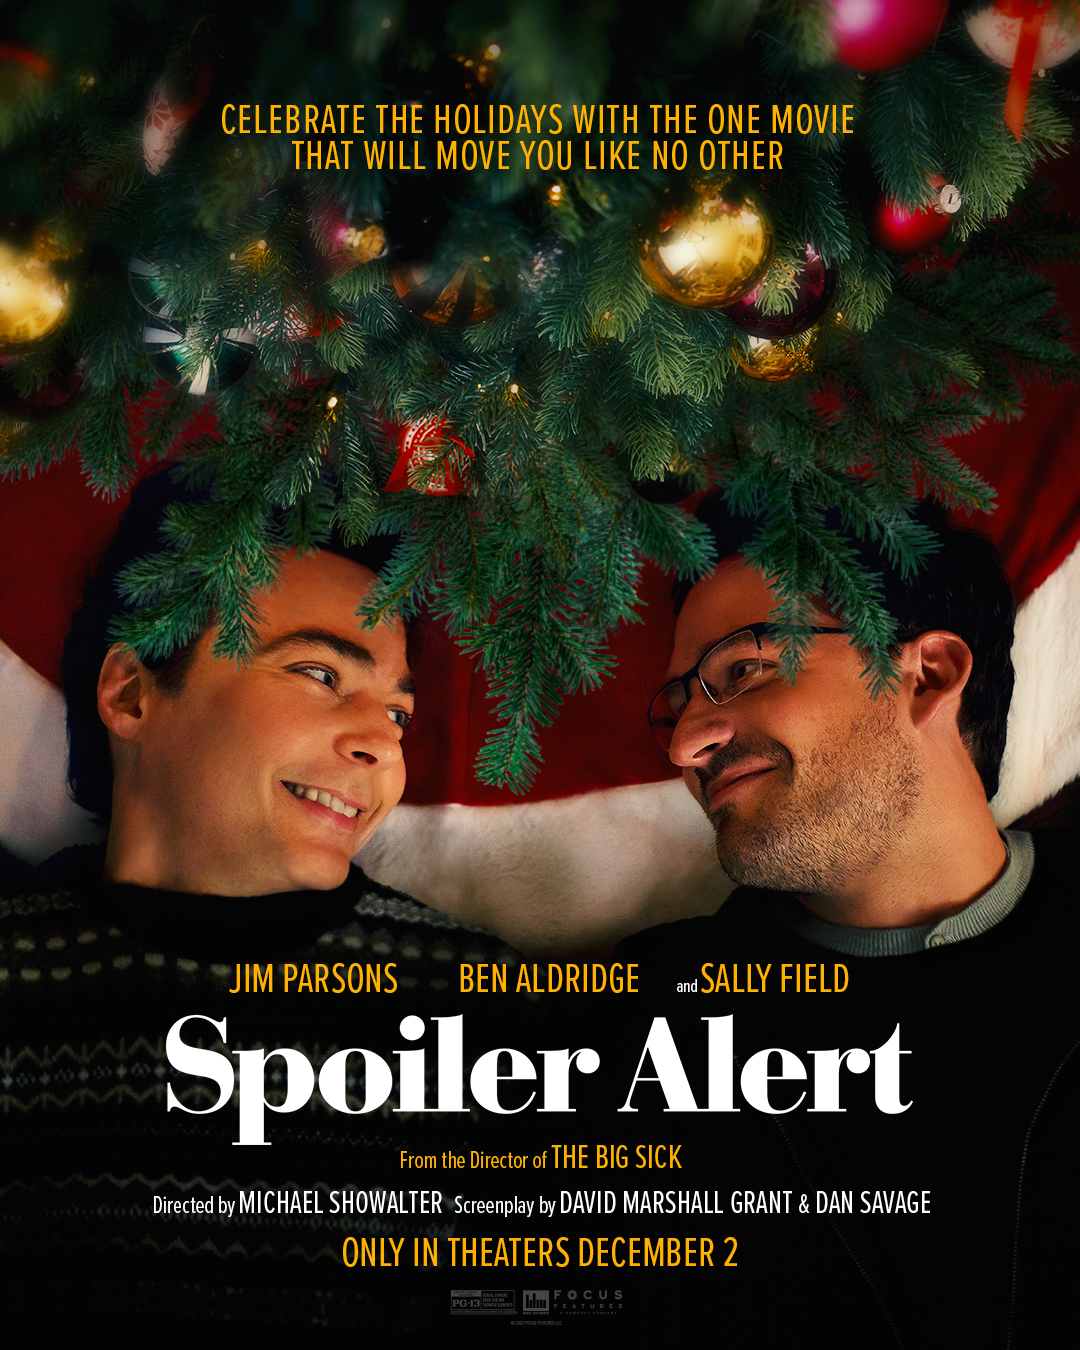 Cover Art for "Spoiler Alert"